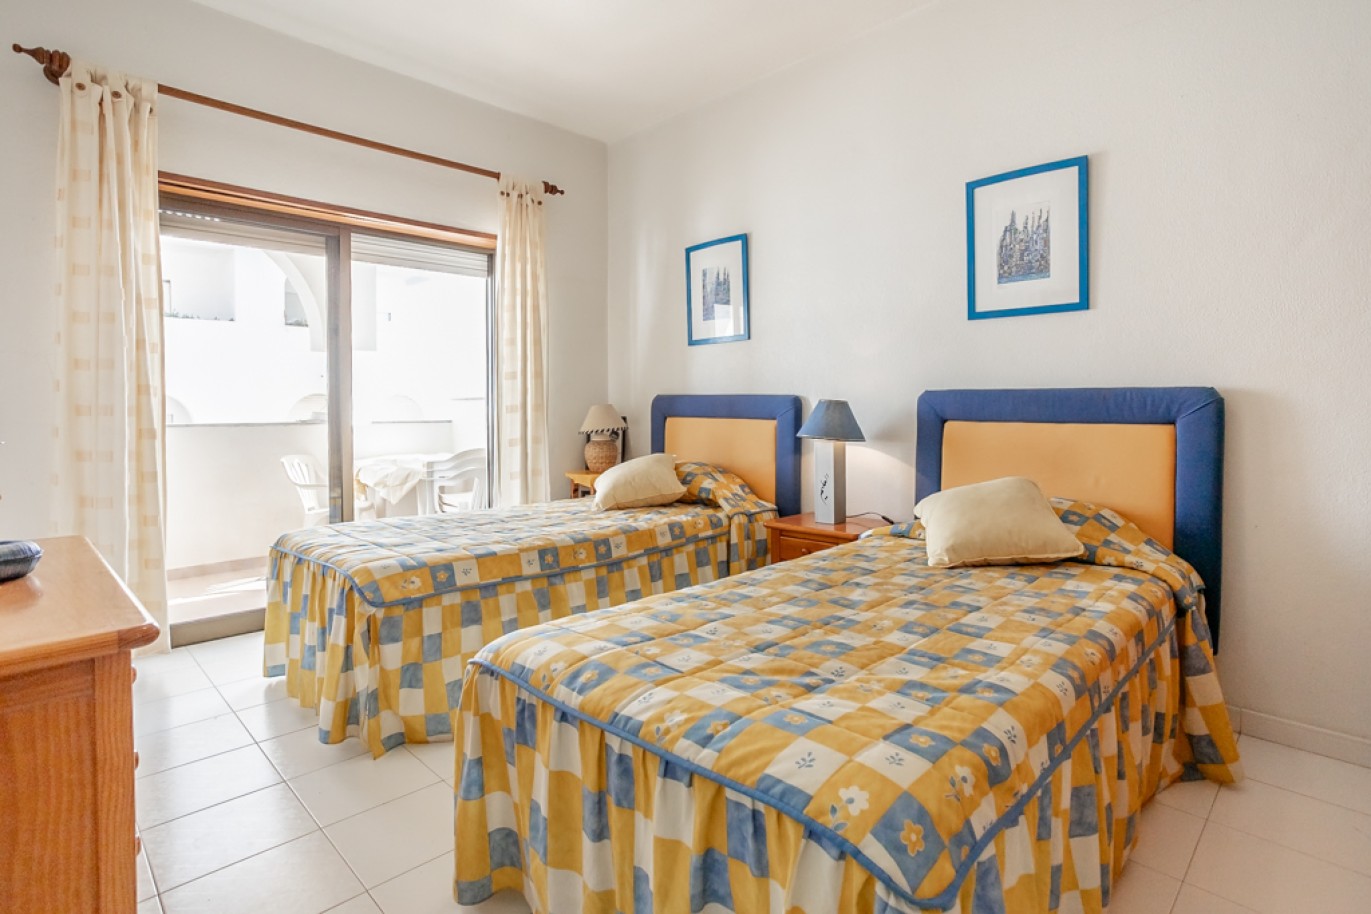 Apartamento com 1+1 quartos, com vista mar, para venda em Porches, Algarve_257029